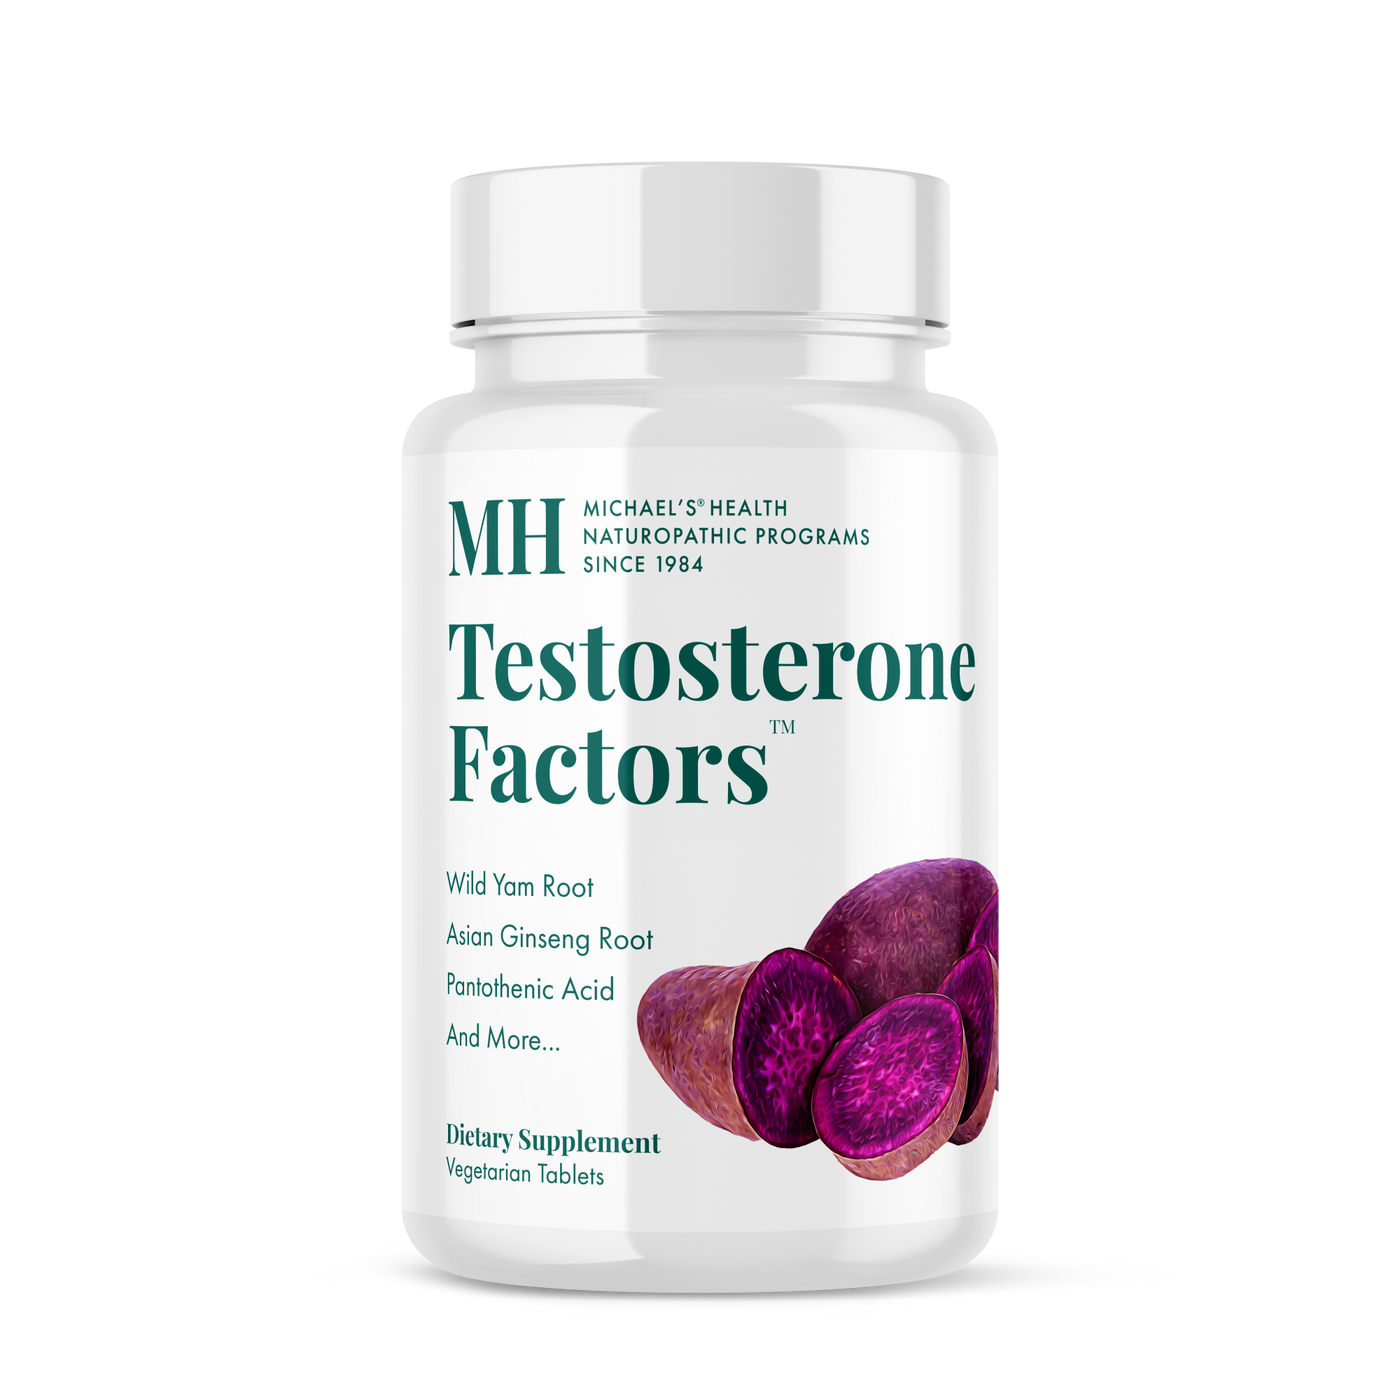 Testosterone Factors™